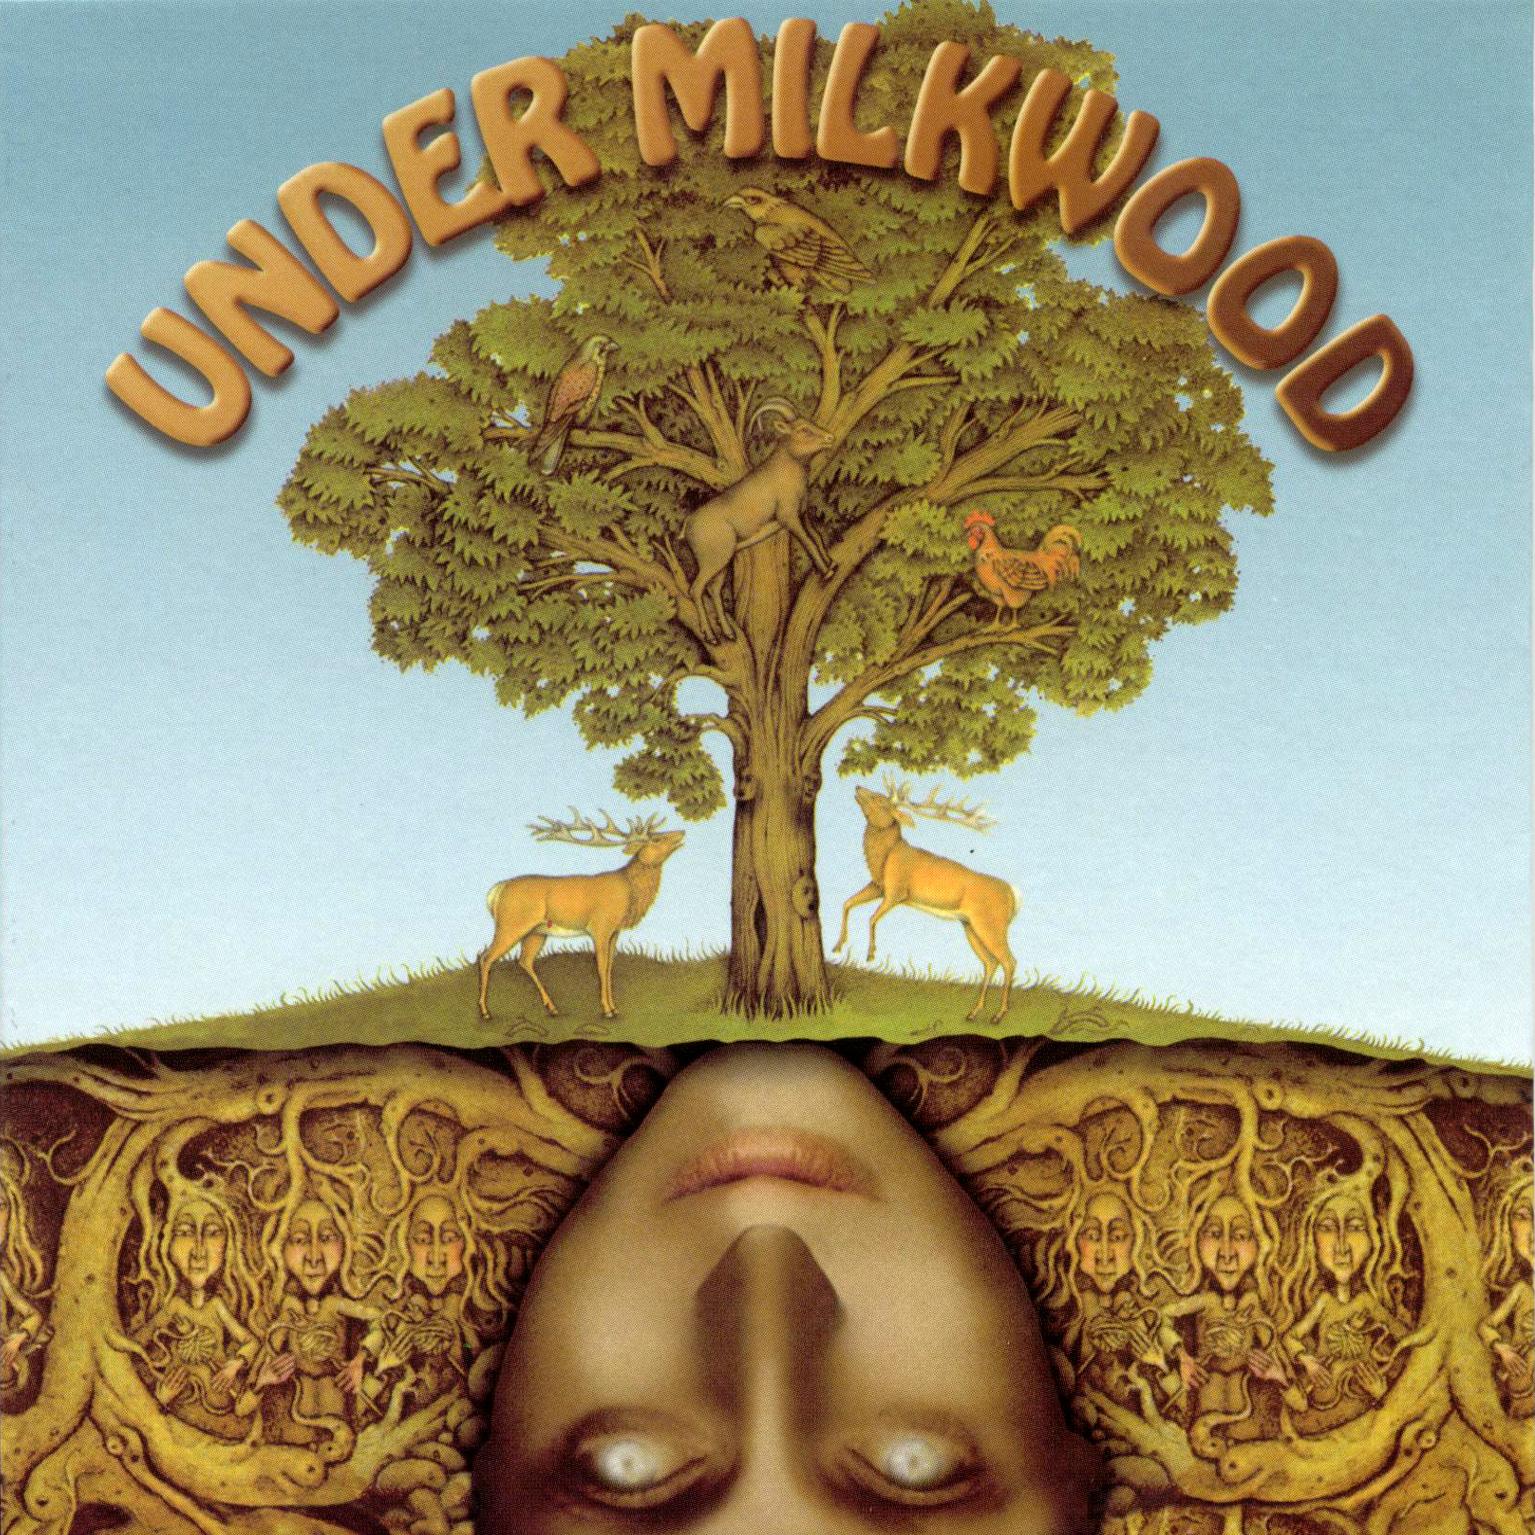 [Under+Milkwood+-+Front_1535x1535.jpg]